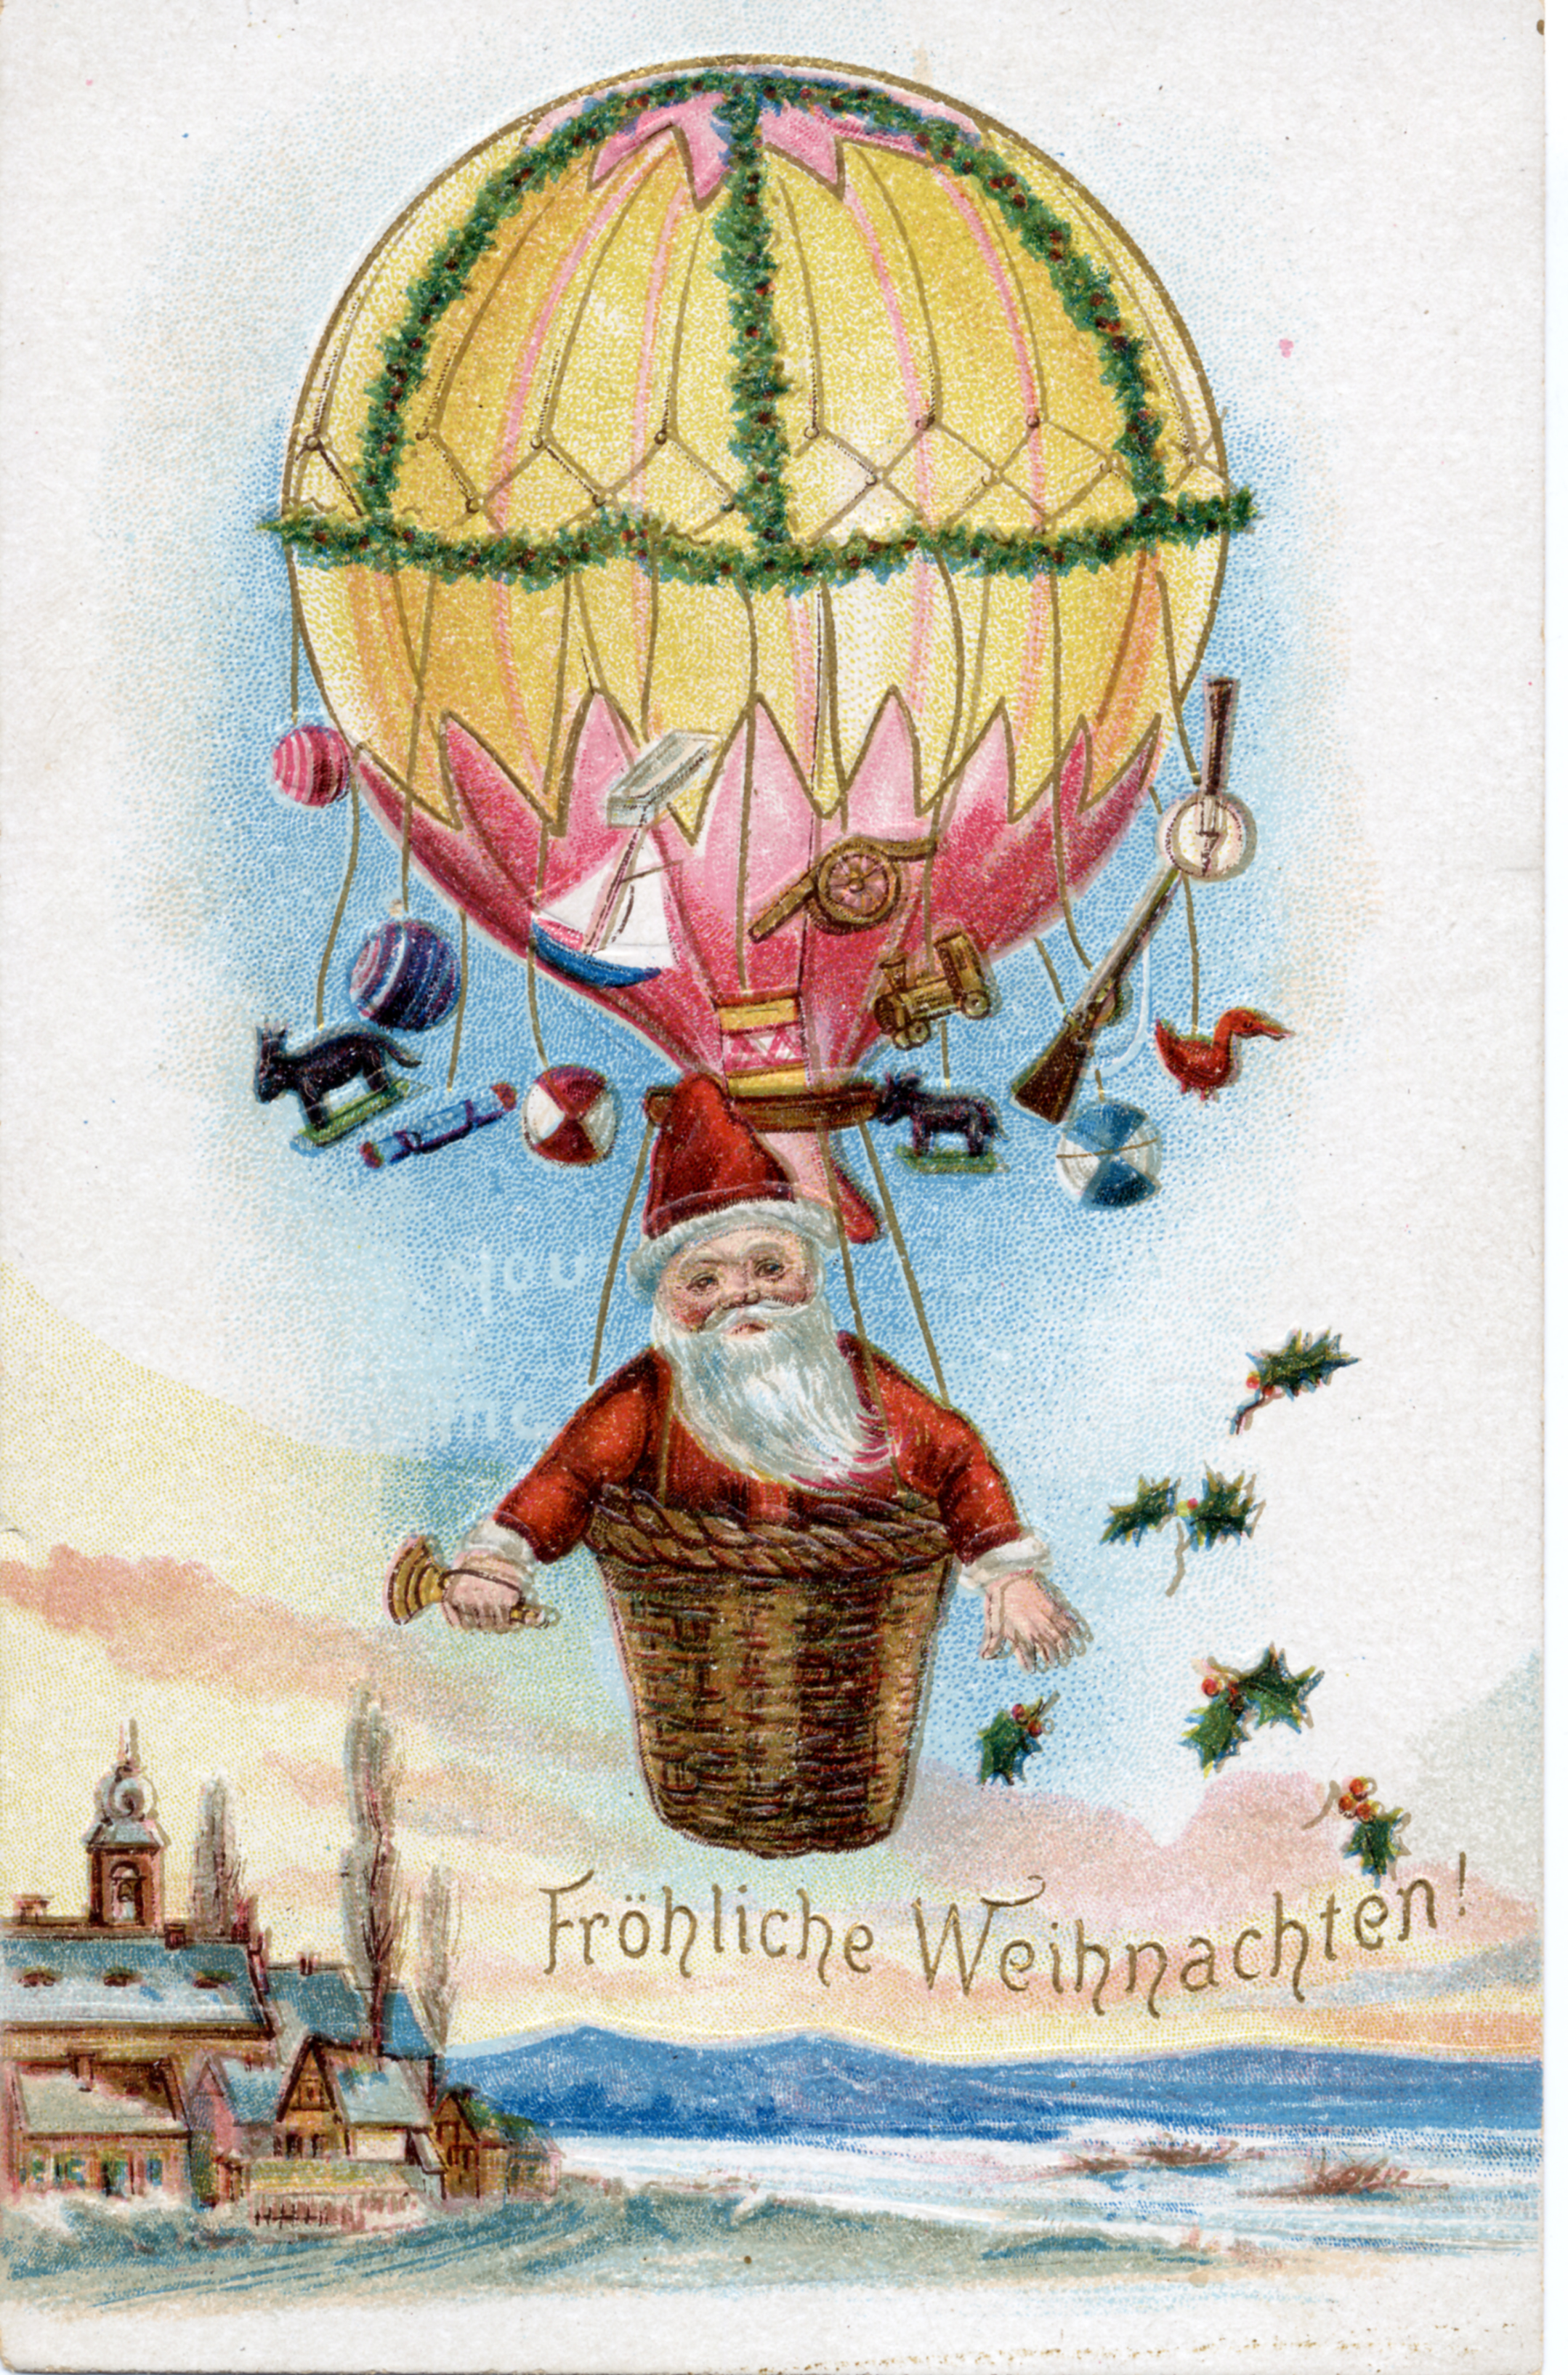 Postkarte “Fröhliche Weihnachten” mit einem Weihnachtsmann im Heißluftballon